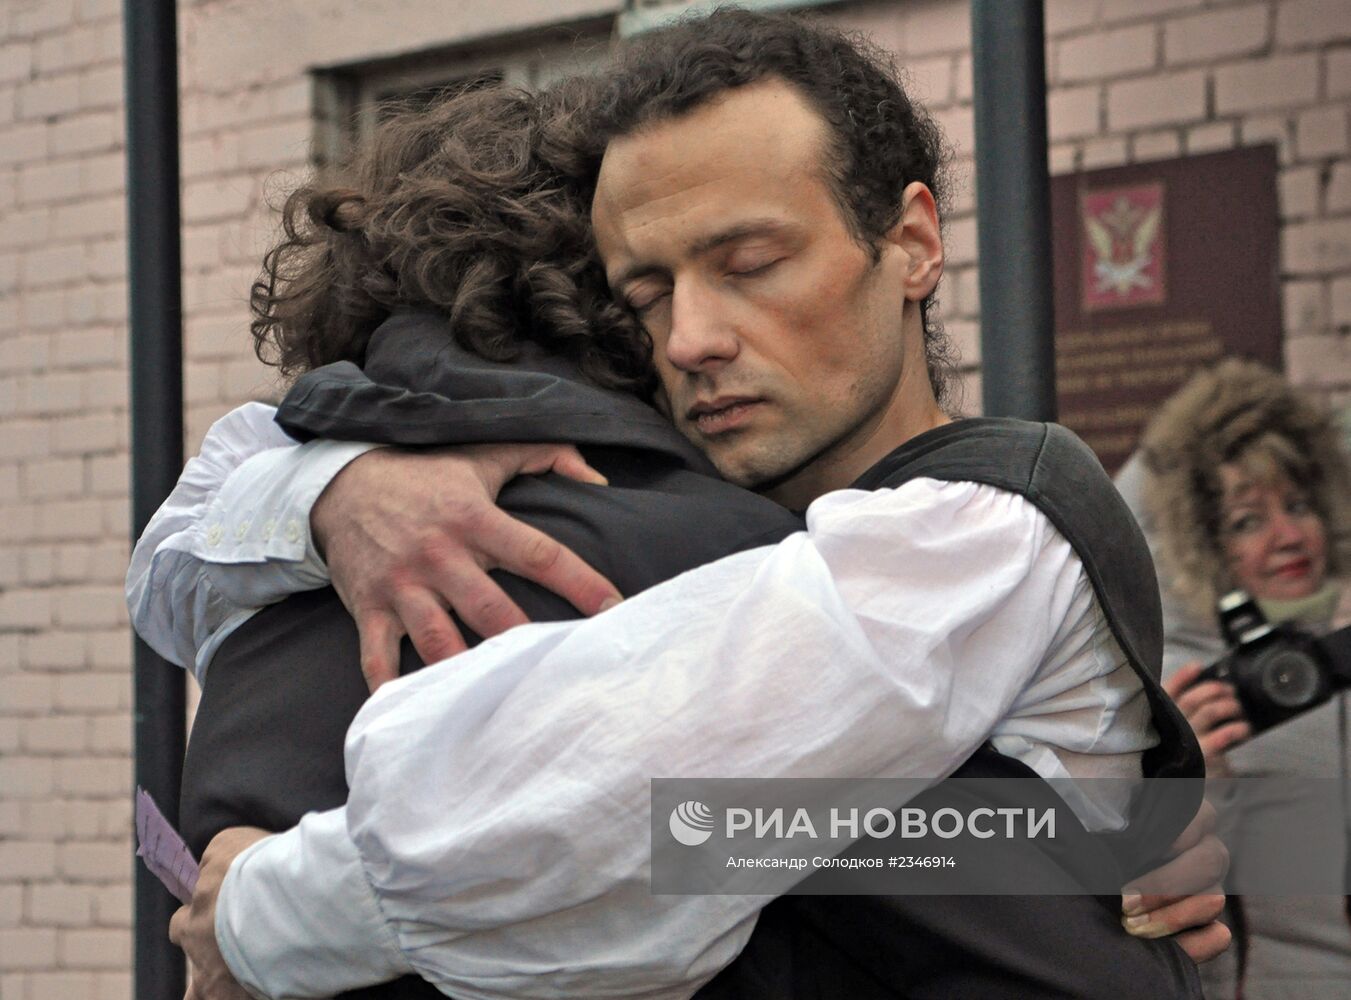 Илья Фарбер условно-досрочно освобожден из СИЗО